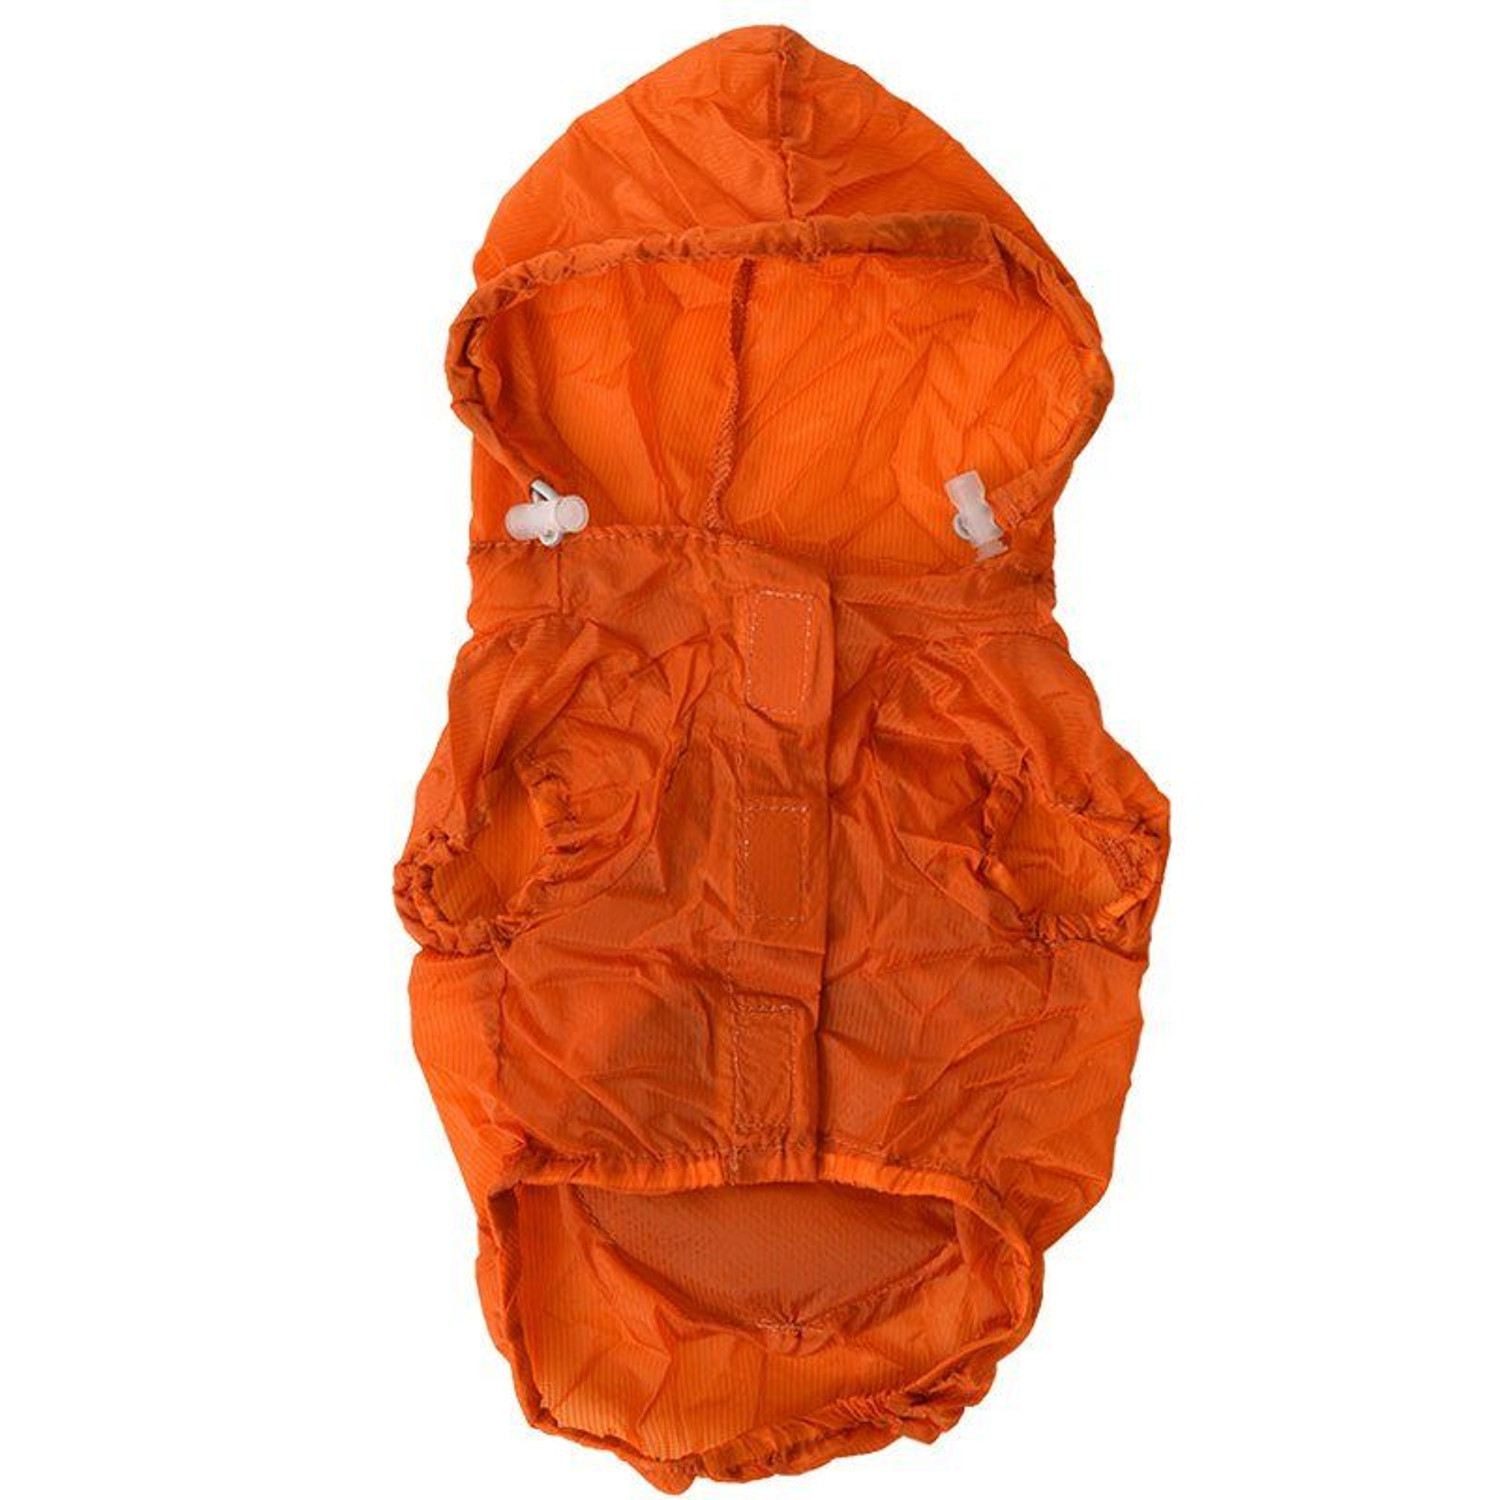 Orange Waterproof Thunder-Paw Foldable Travel Dog Raincoat by Pet Life